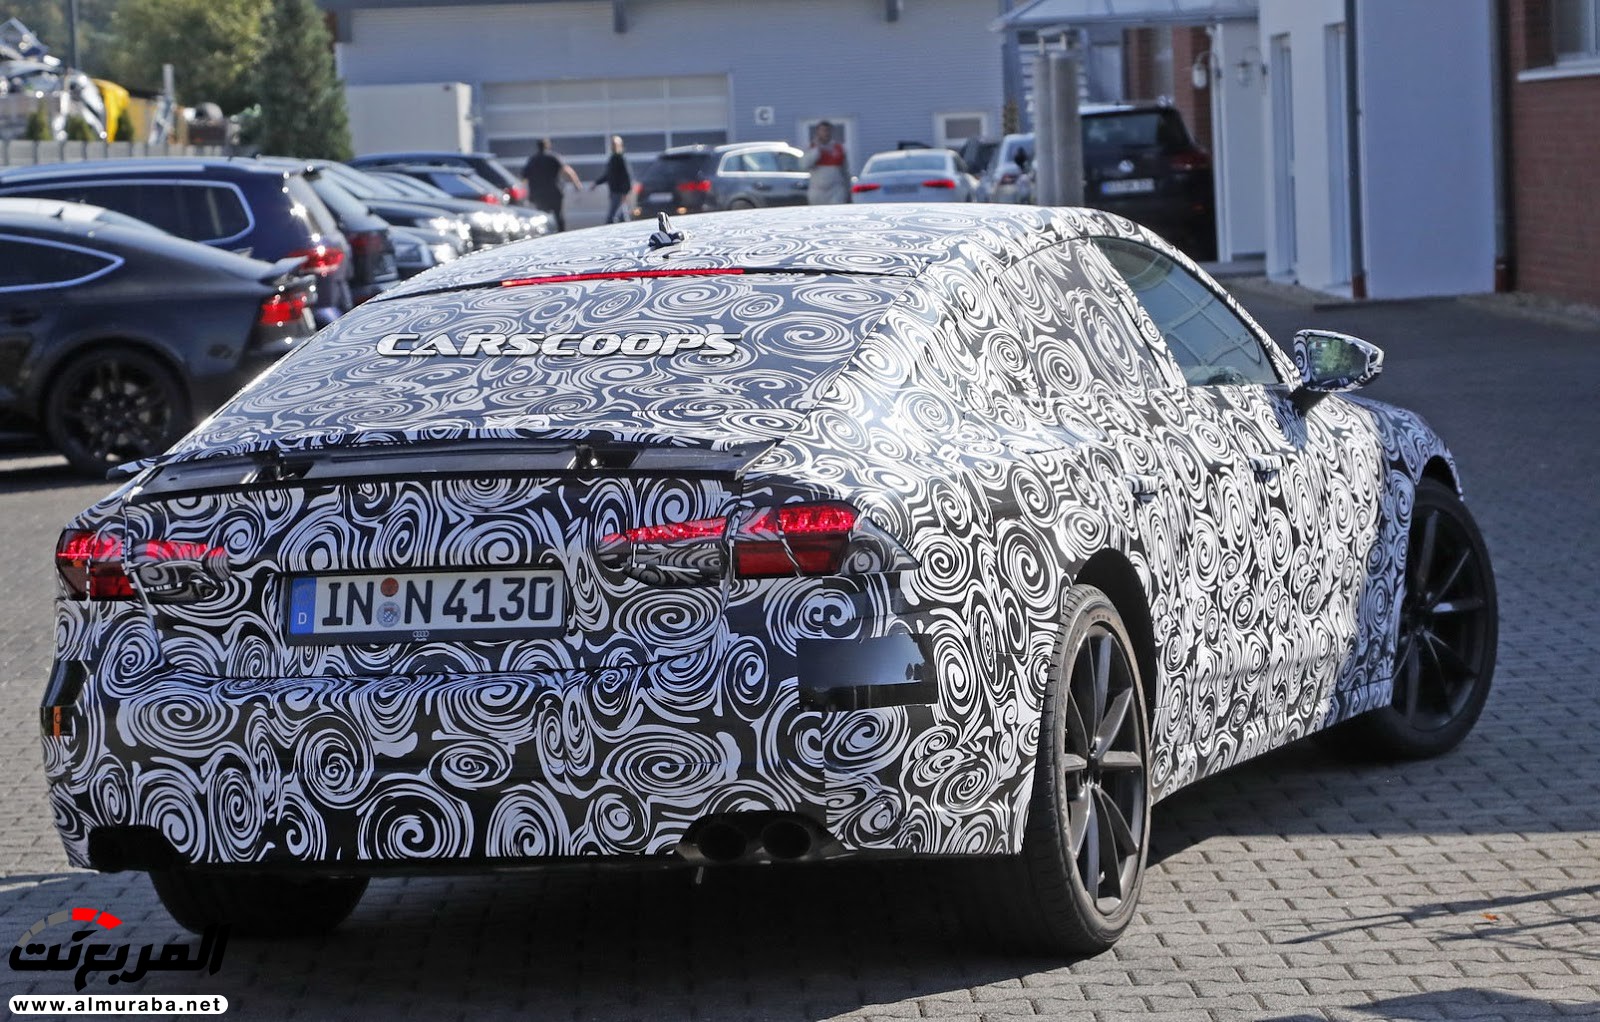 أودي A7 الجديدة كليا 2018 تصل في سبتمبر المقبل بنسخة ذات مكونات هجينة ضمن نطاقها Audi 15